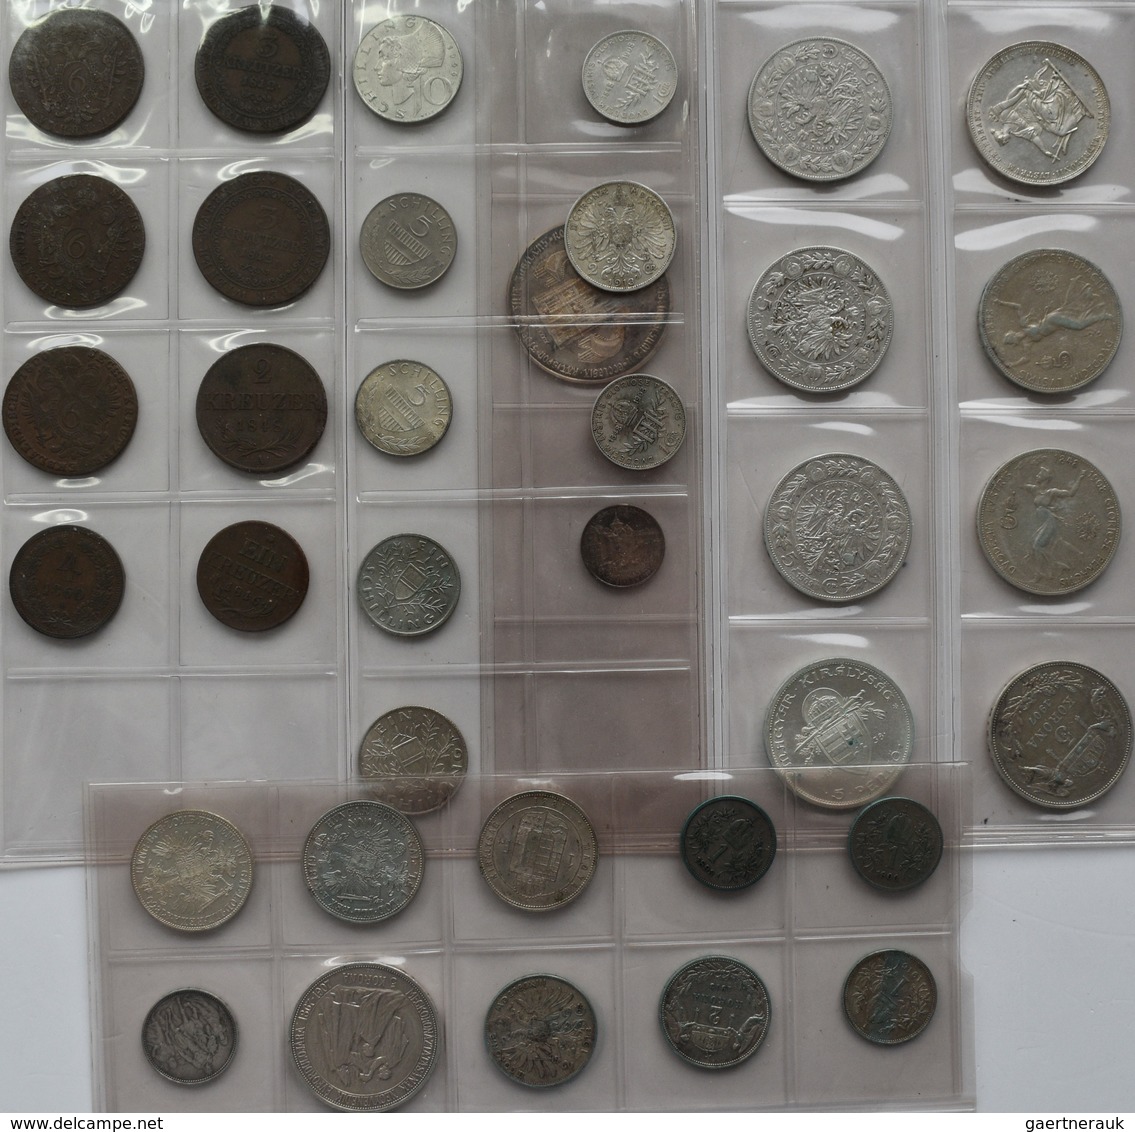 Haus Habsburg: Kleines Lot An Münzen Aus Österreich-Ungarn, überwiegend Silbermünzen Um 1900 Wie Flo - Andere - Europa